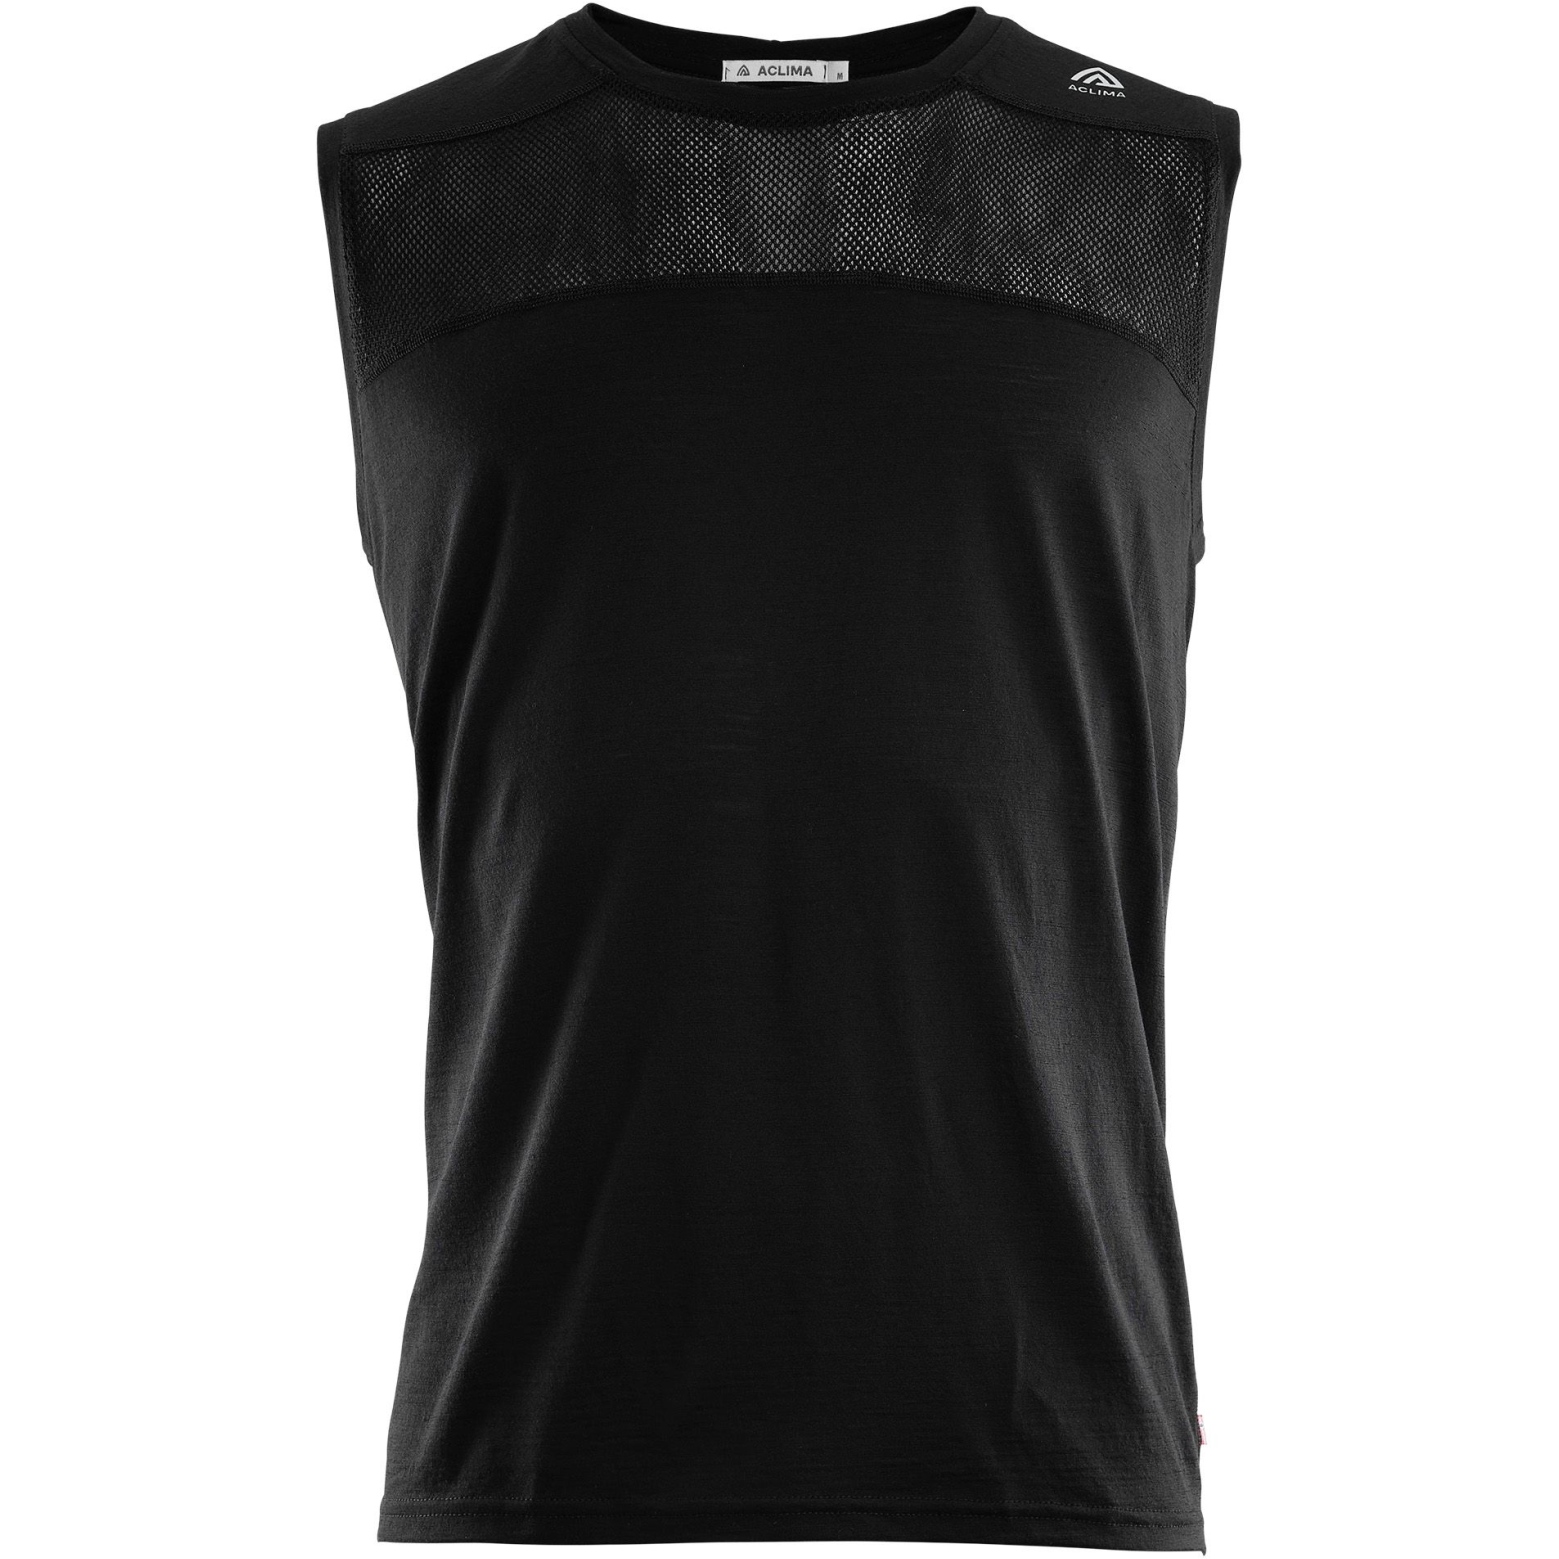 Produktbild von Aclima Lightwool Sports Singlet Ärmelloses Shirt Herren - jet black